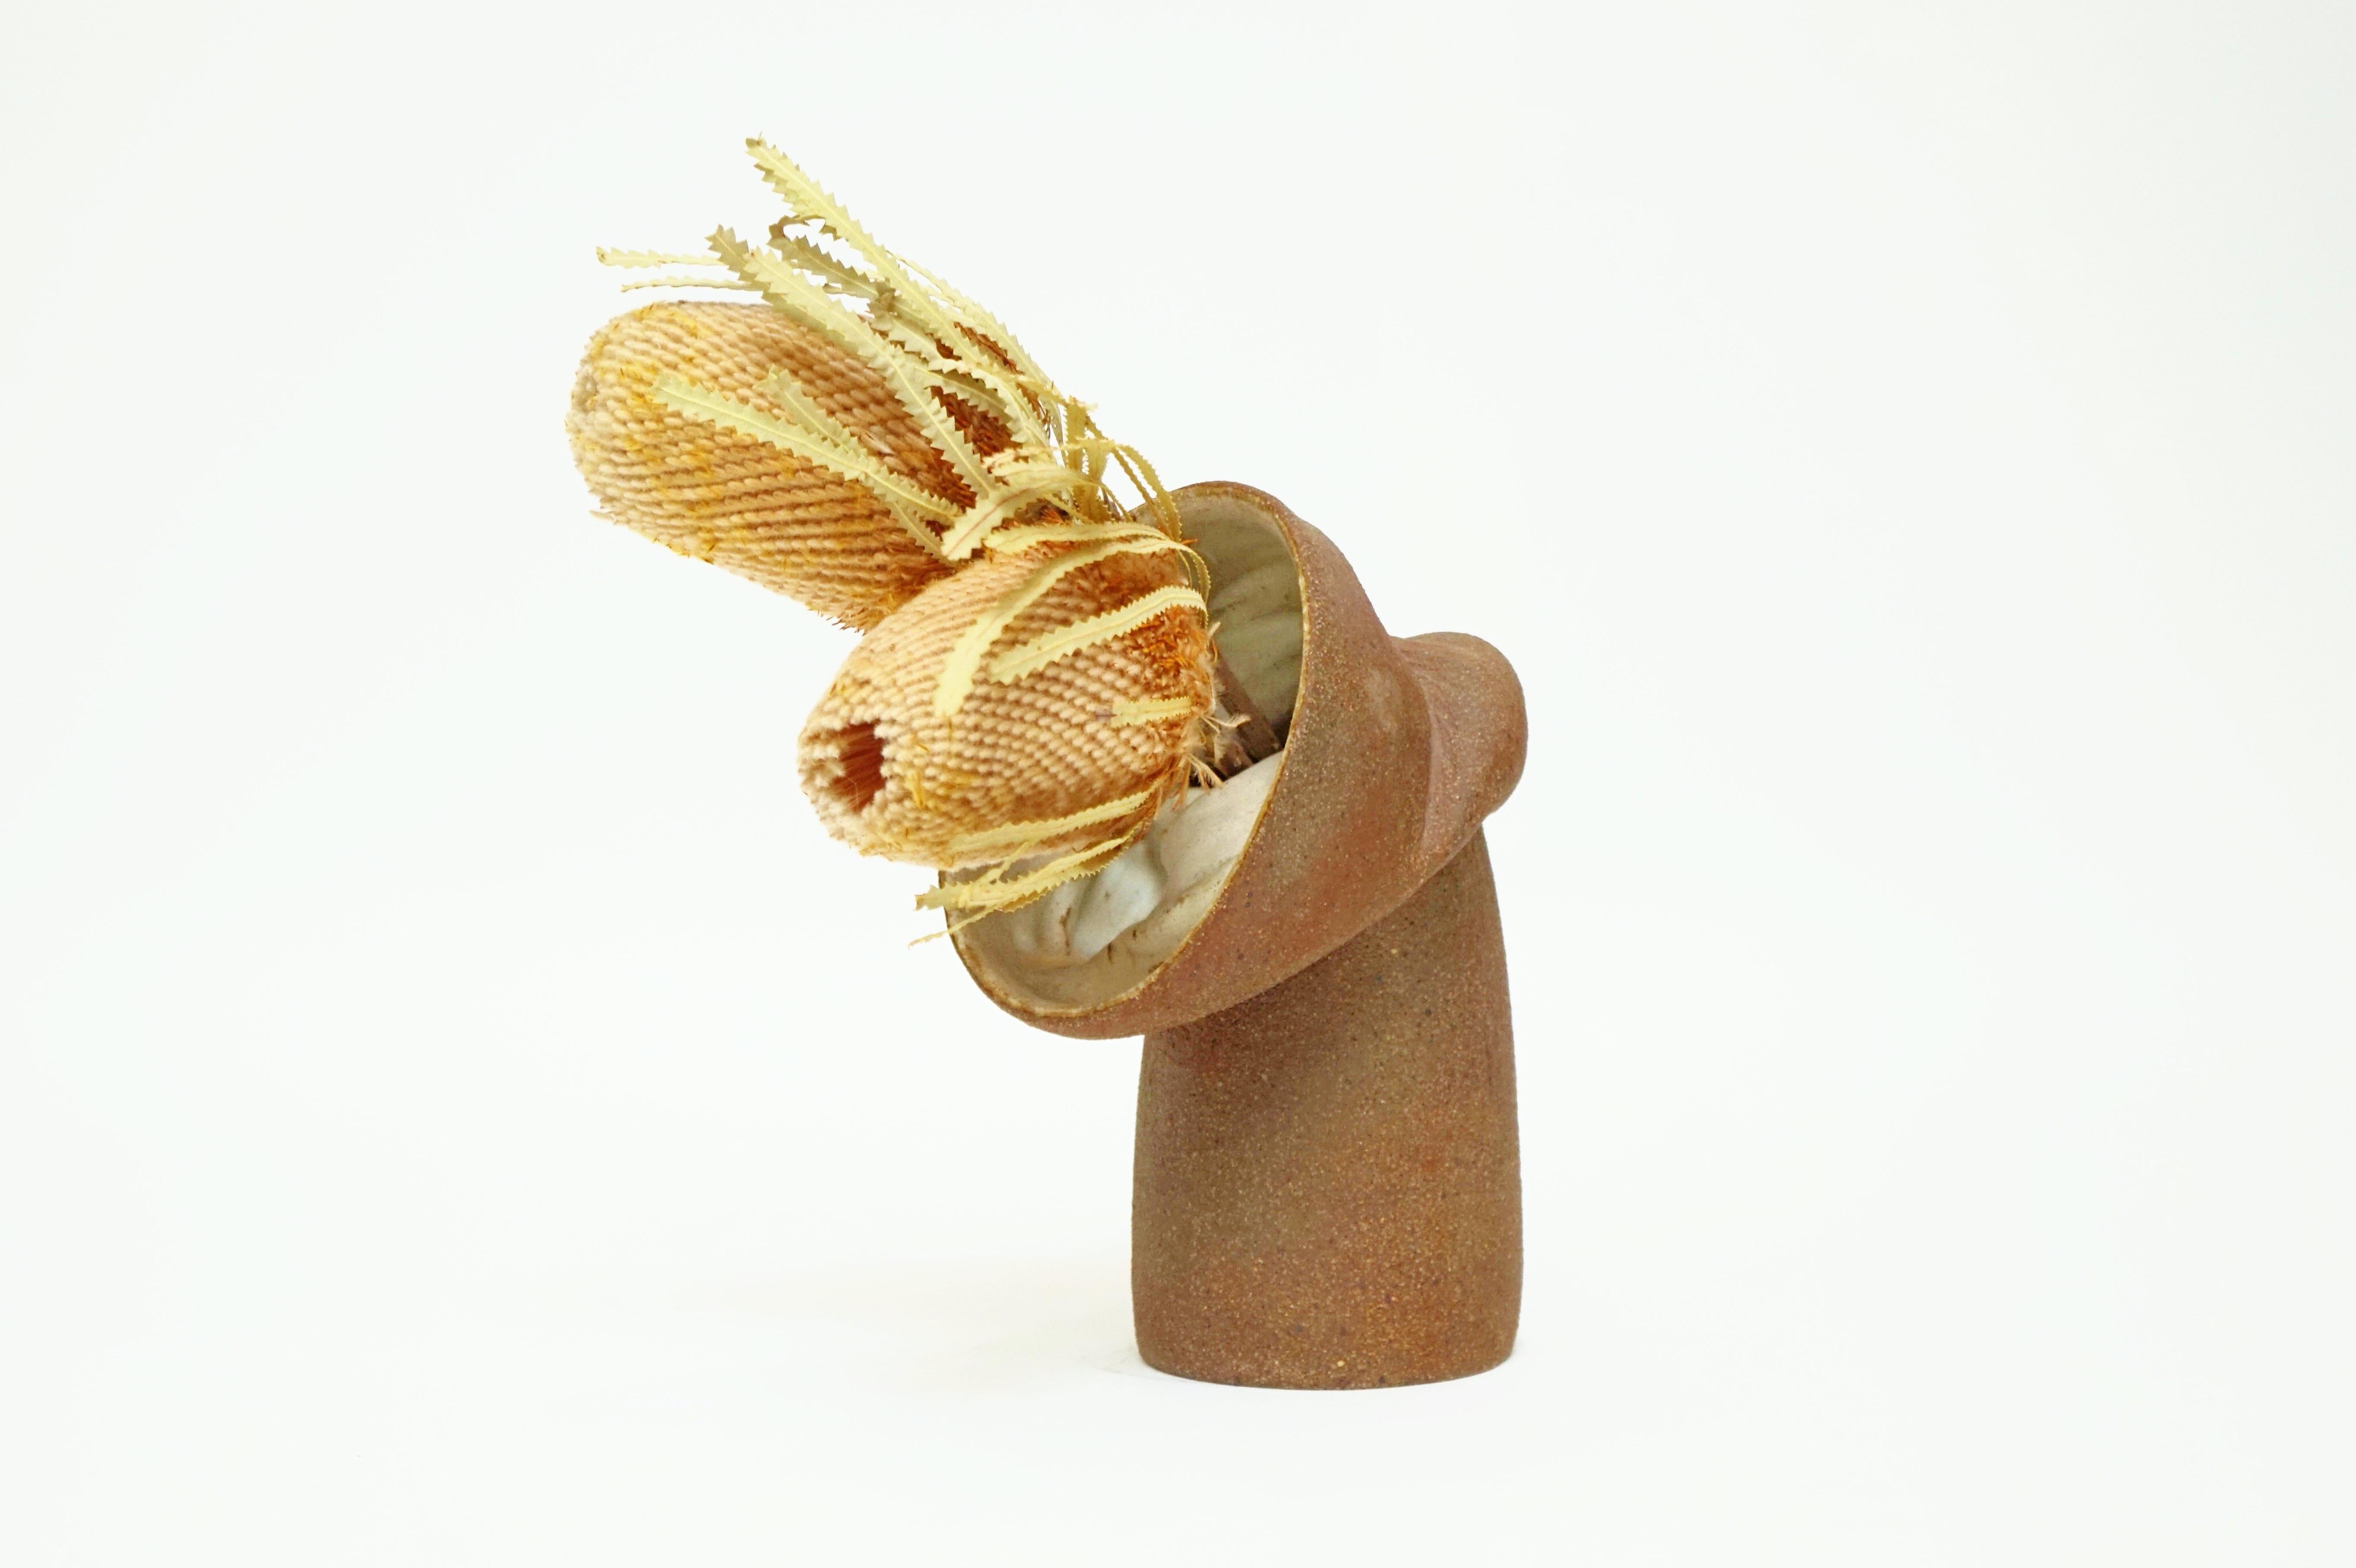 Ce magnifique vase en céramique fabriqué à la main est un merveilleux récipient pour vos compositions florales fraîches ou séchées.

Détails :
- Glace mate et texturée
- 8,5